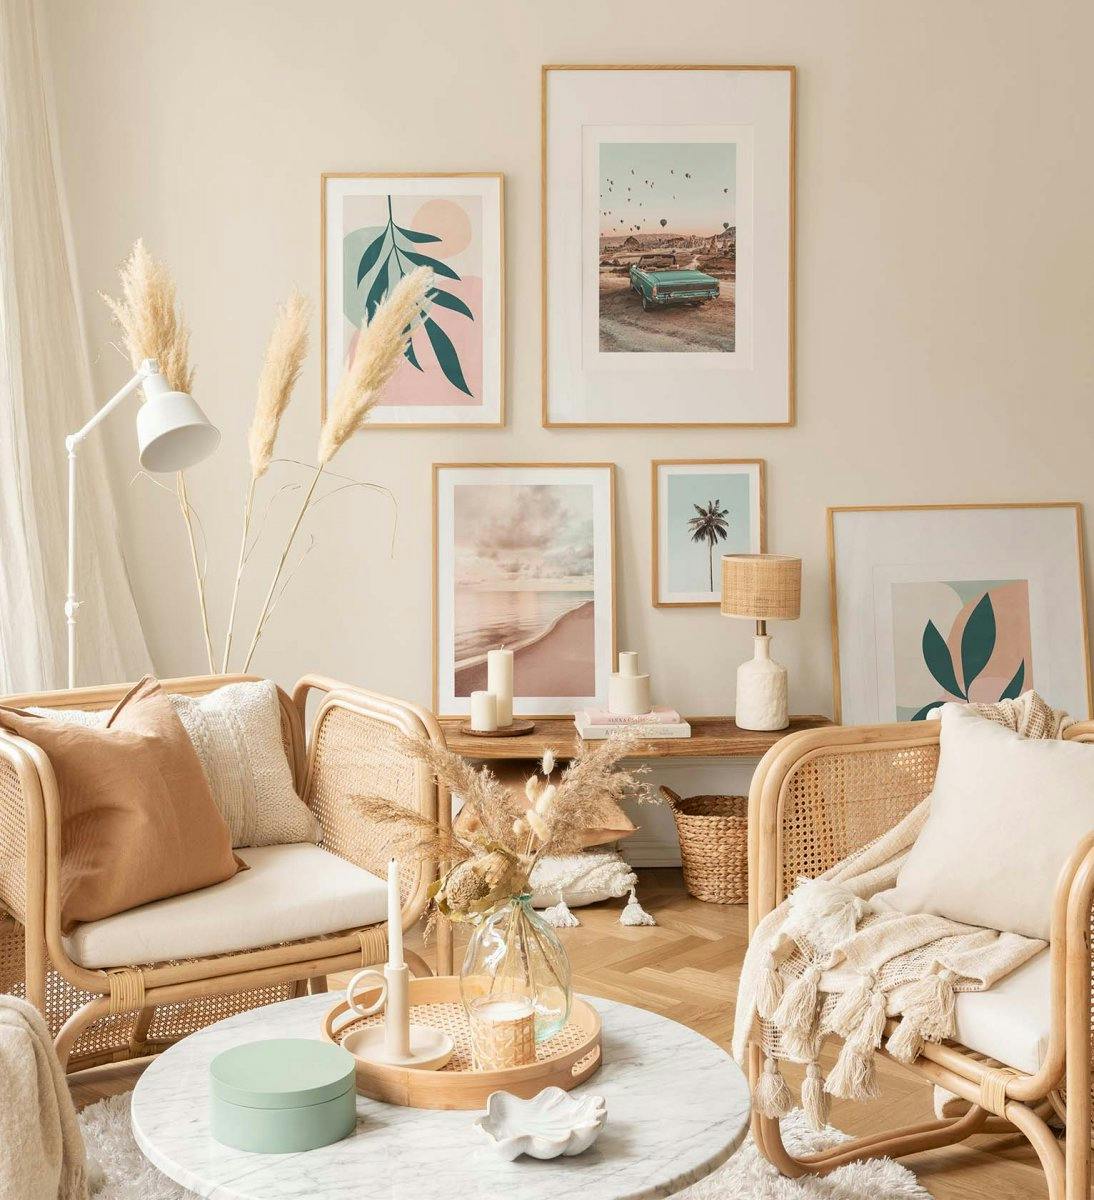 Grafische Bilderwand in Pastellfarben kombiniert mit Naturfotografien für das Home Office